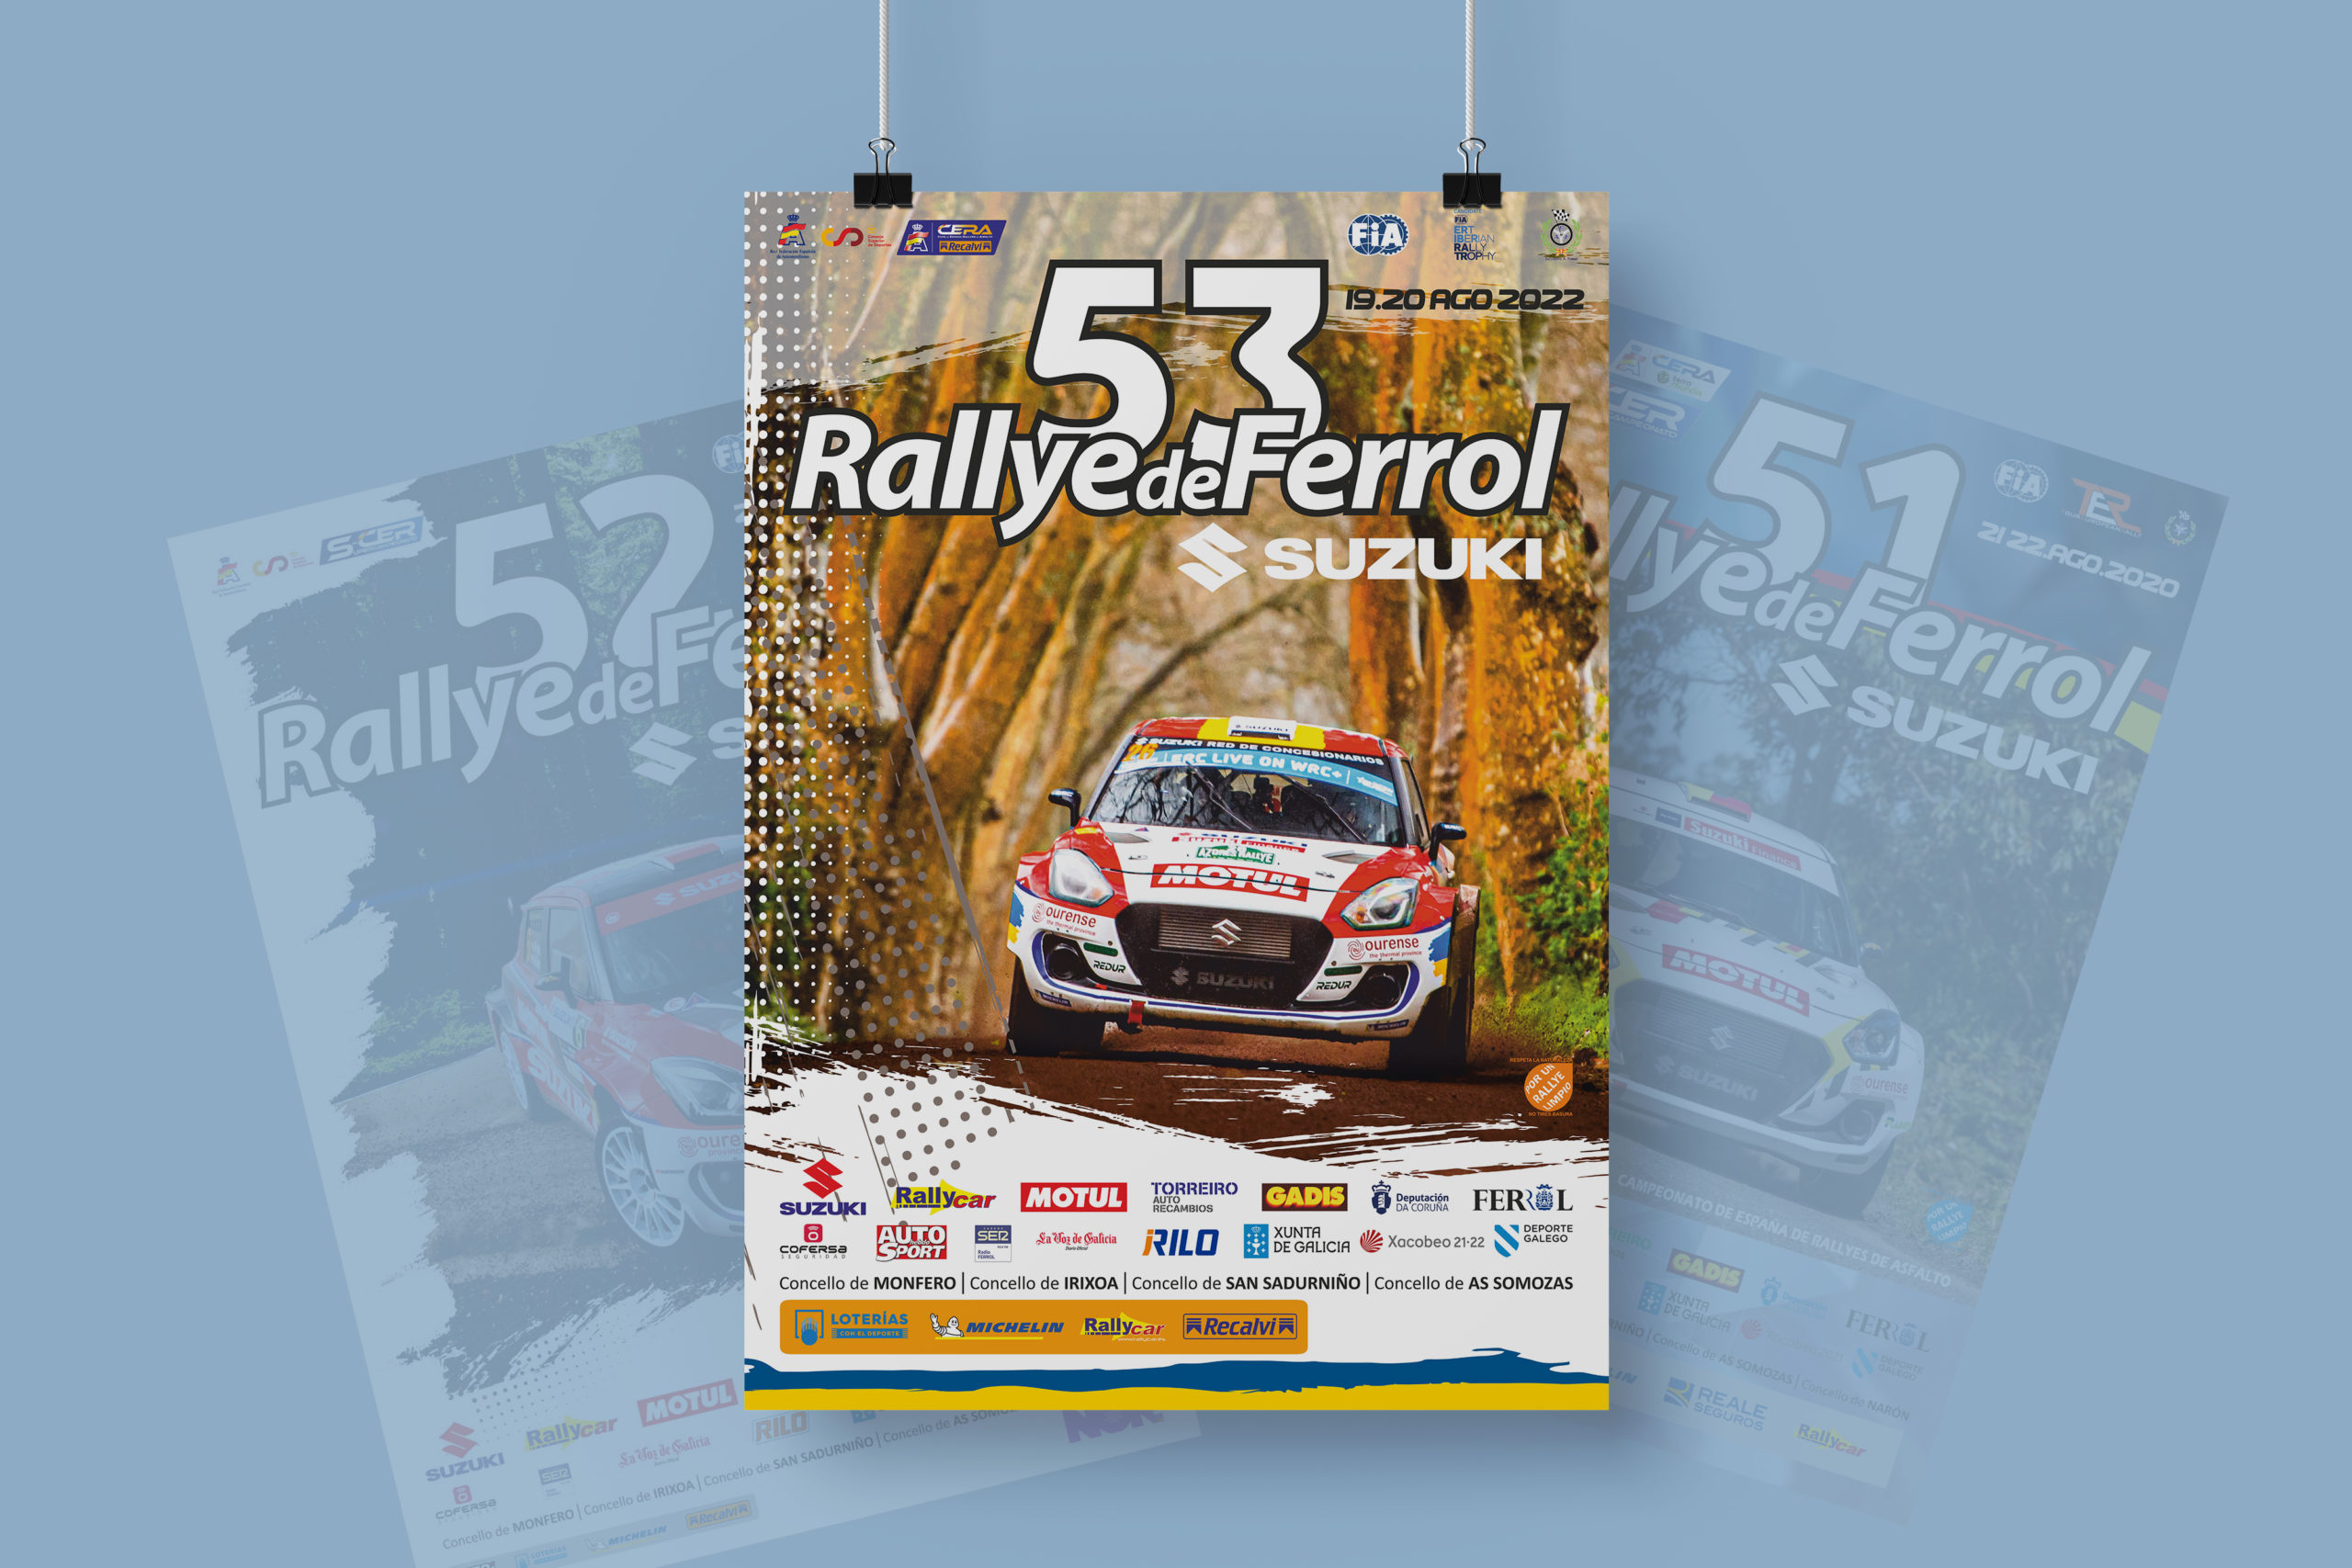 El Rallye de Ferrol-Suzuki presenta el cartel de la 53 edición